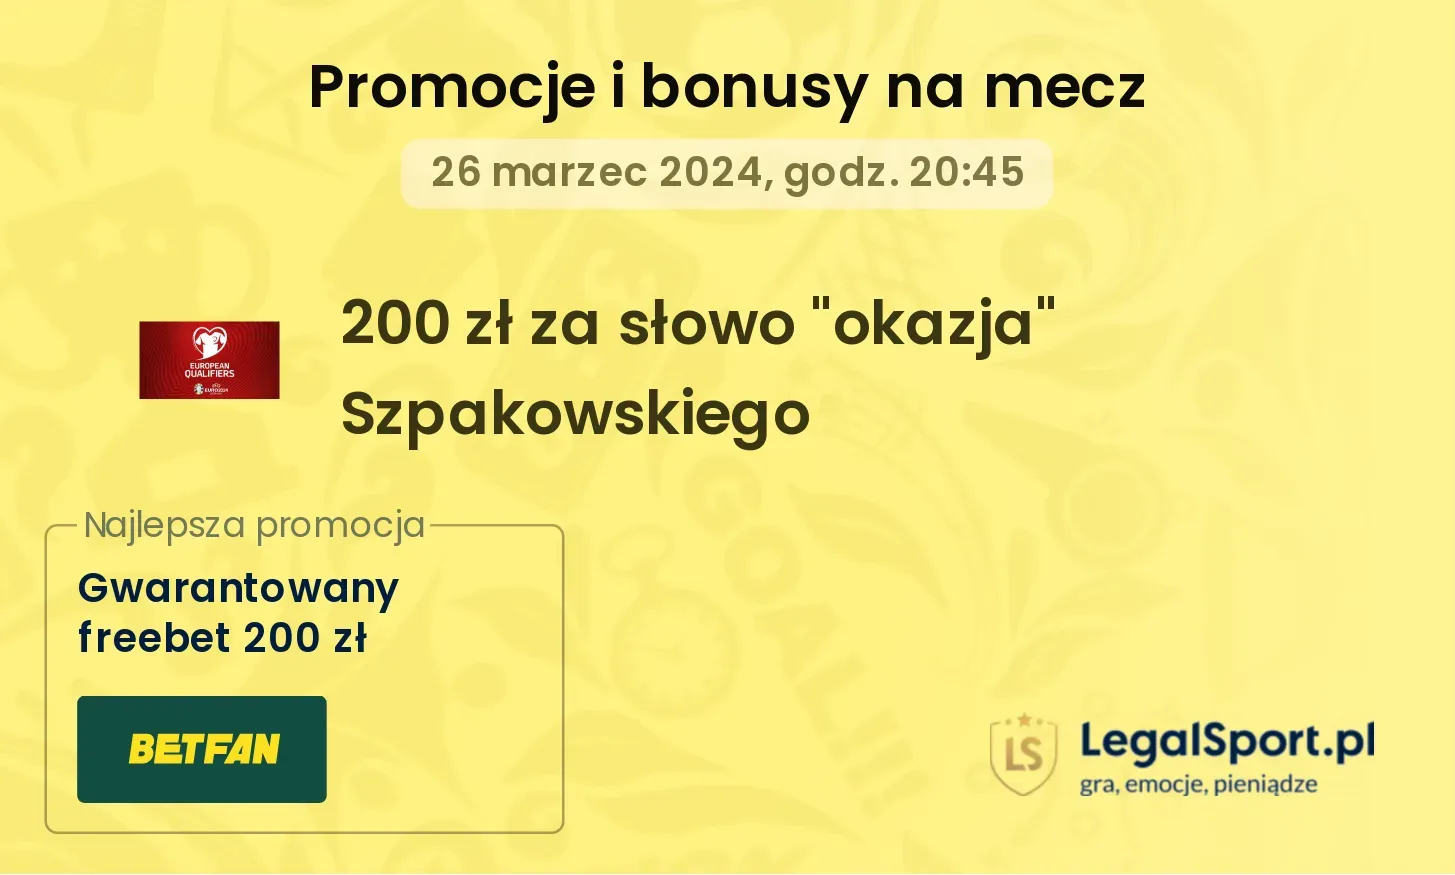 200 zł za słowo "okazja" Szpakowskiego promocje bonusy na mecz